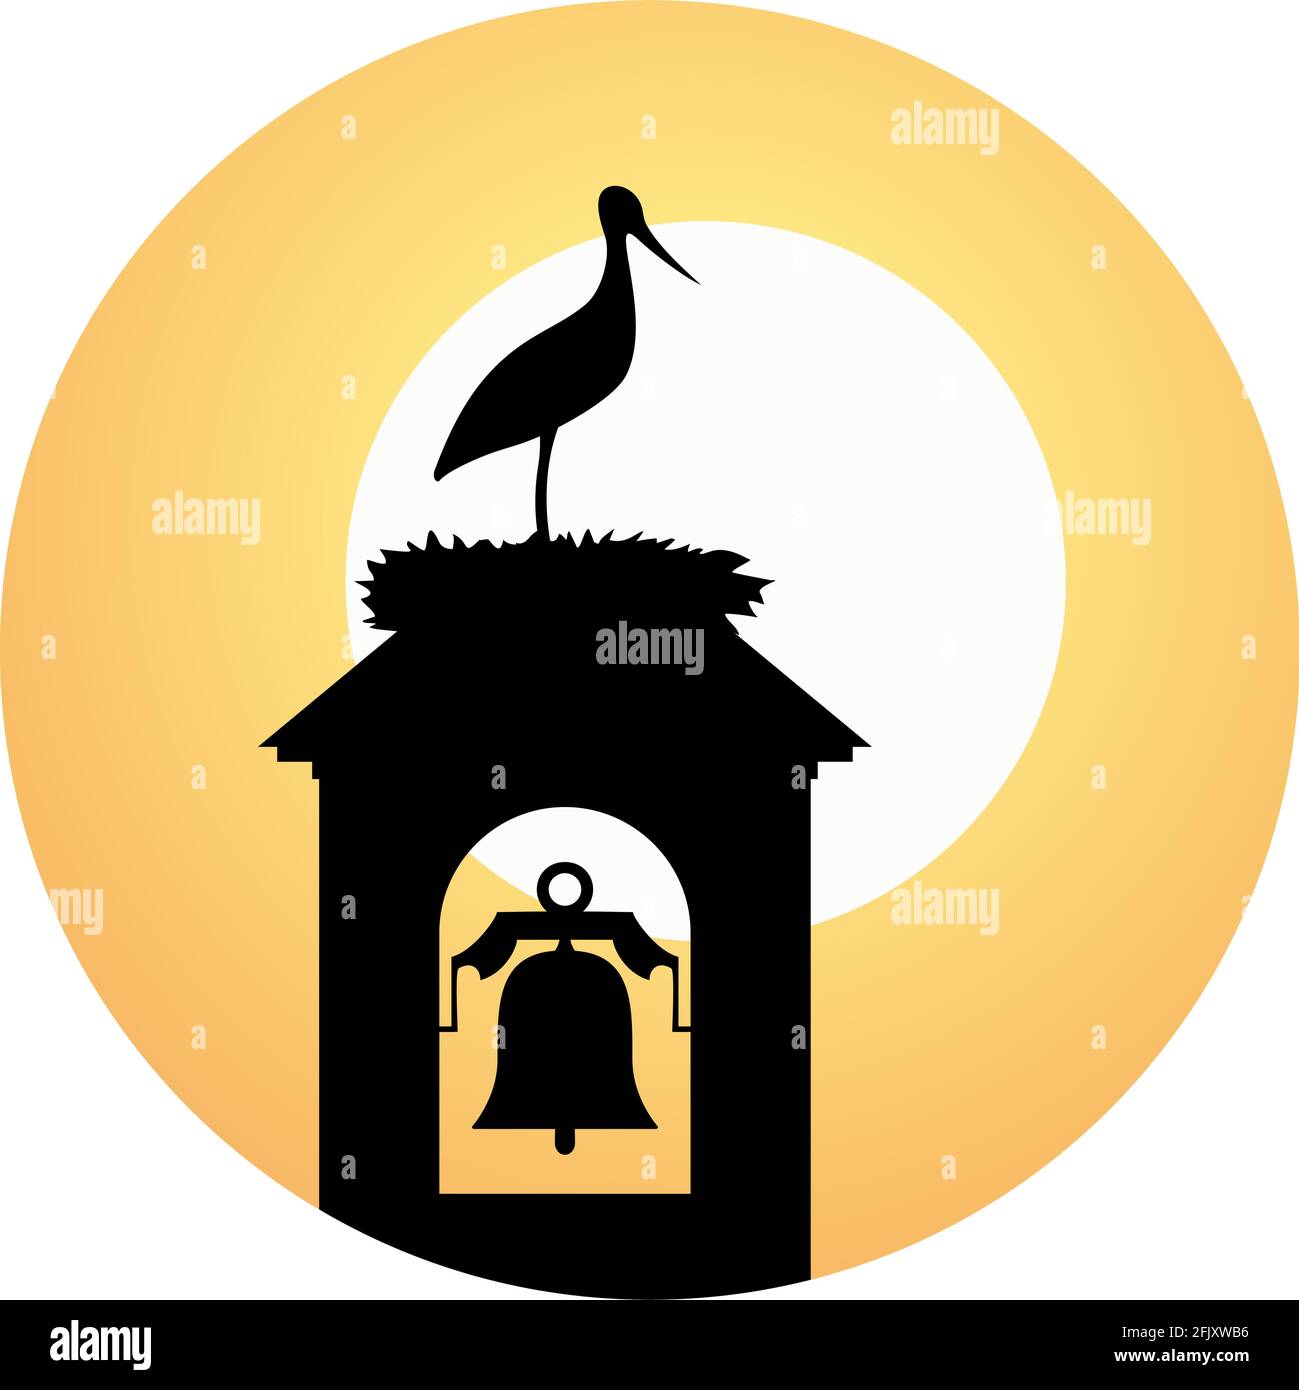 stork in tower bell illustration Stock Vector